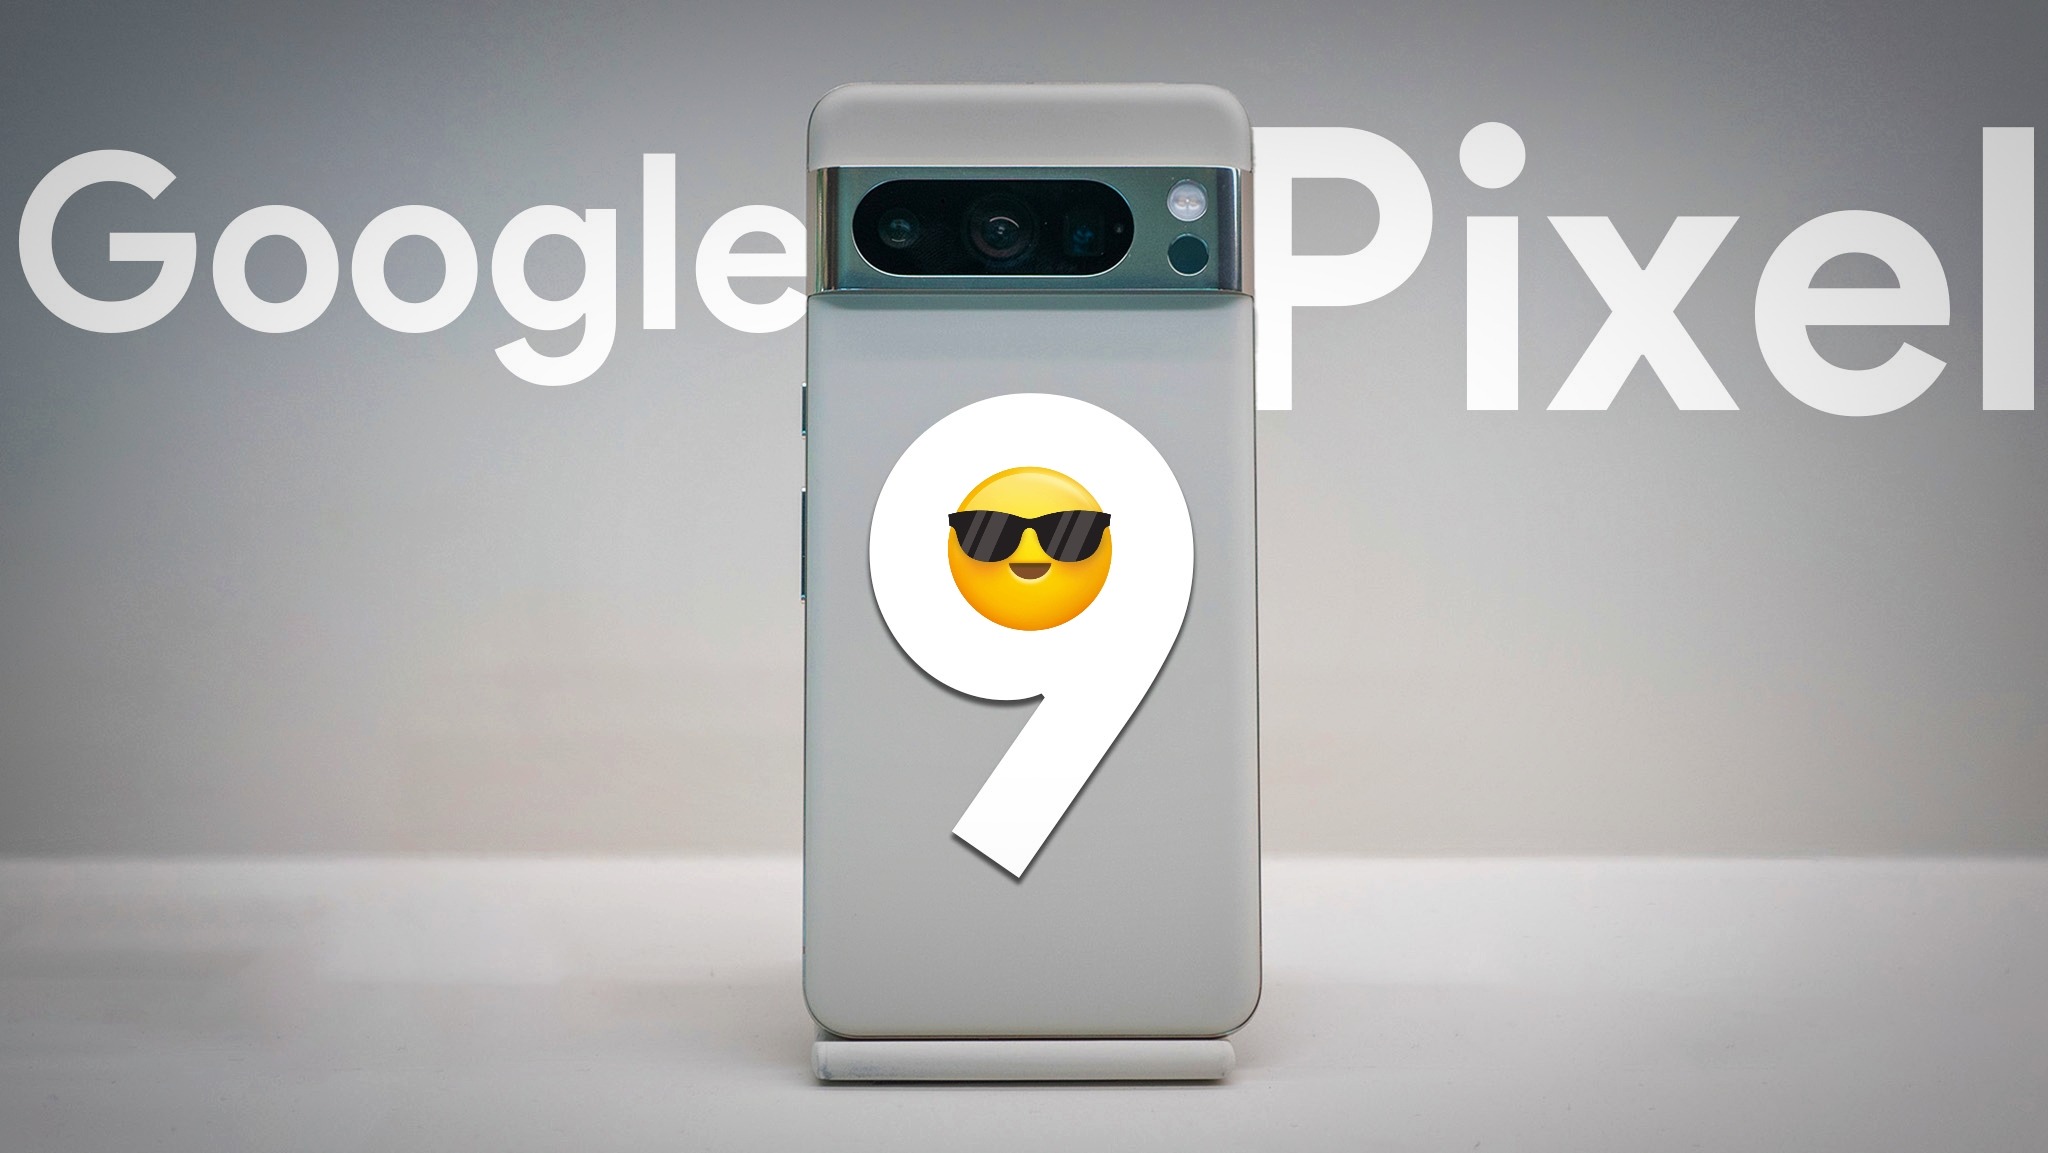 Google Pixel 9 Details In Hindi